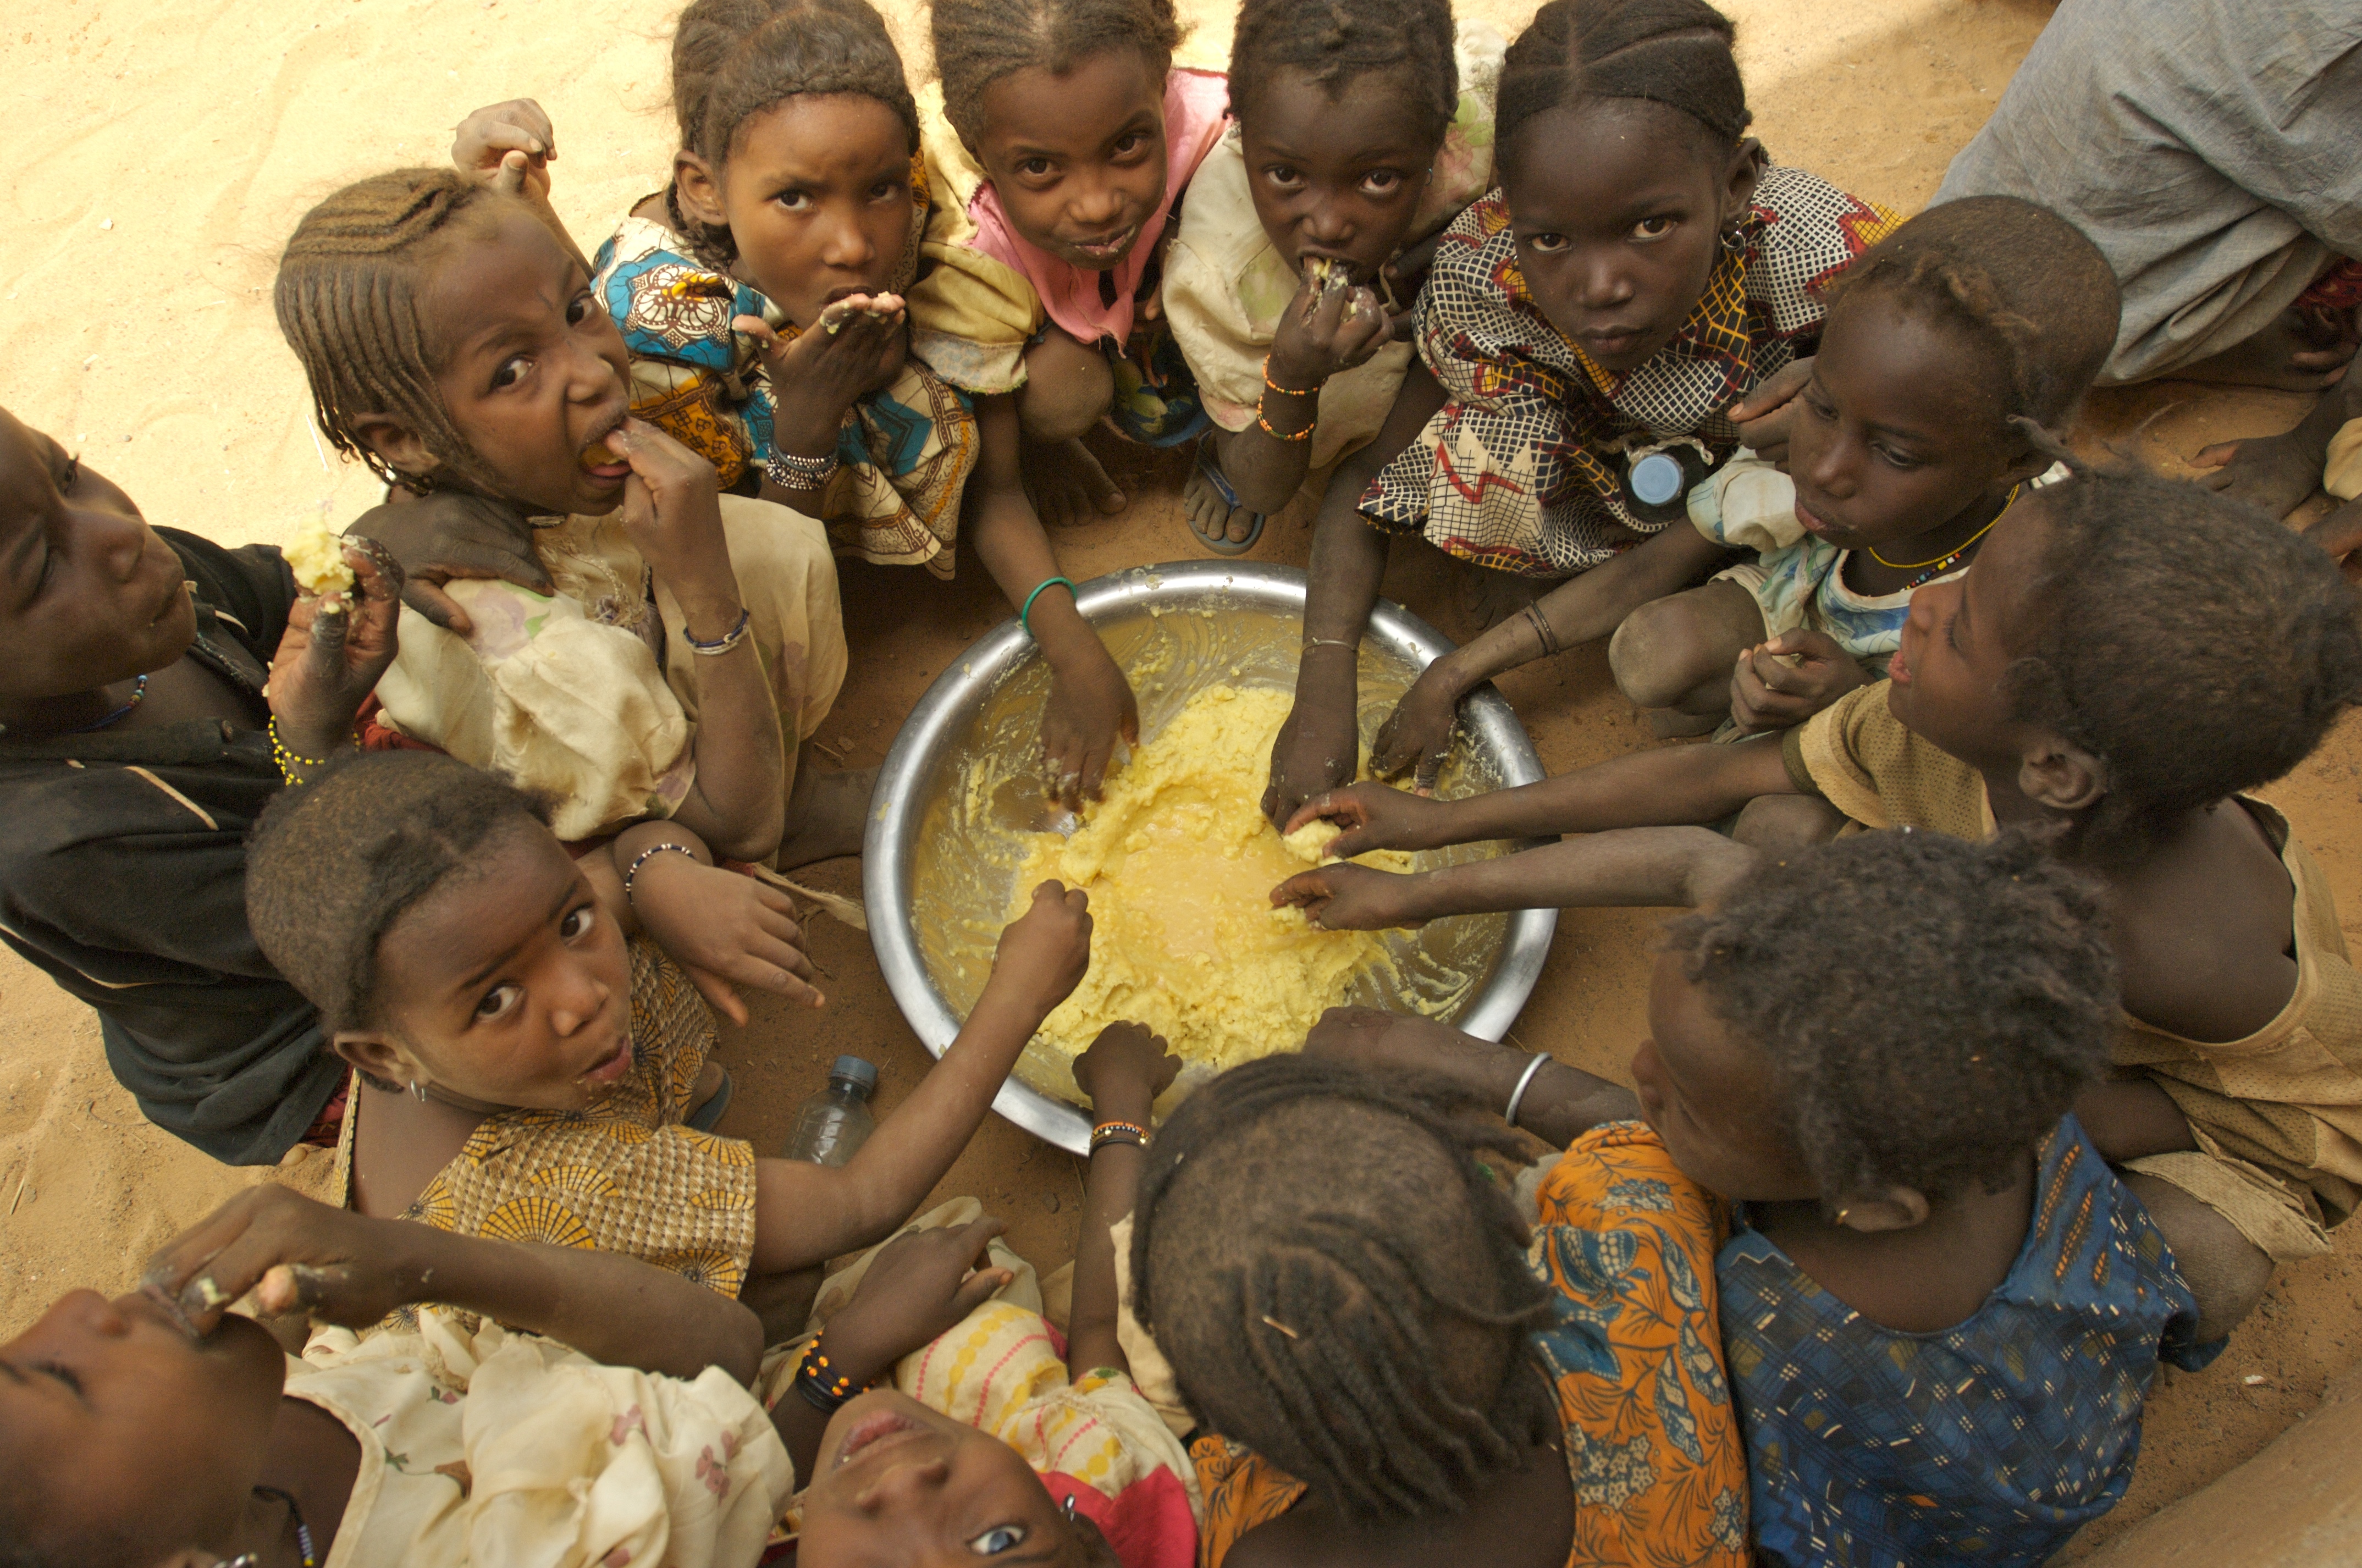 Starving help. Голодающие дети пфрика. Галодны детий в Африка.